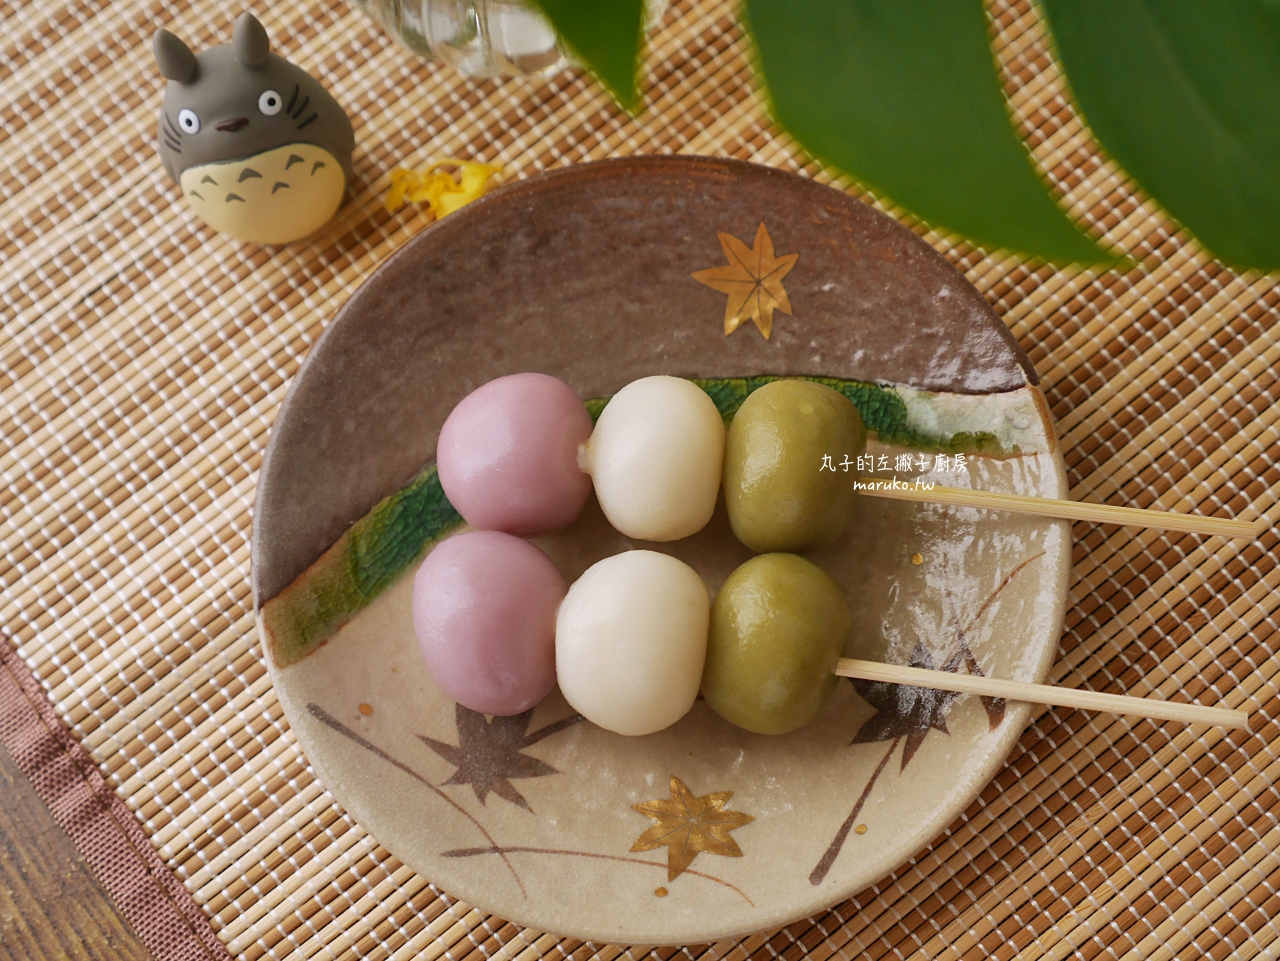 【食譜】三色糰子 花見糰子 月見糰子 只要二種粉混合均勻 日本祭典路邊攤小吃